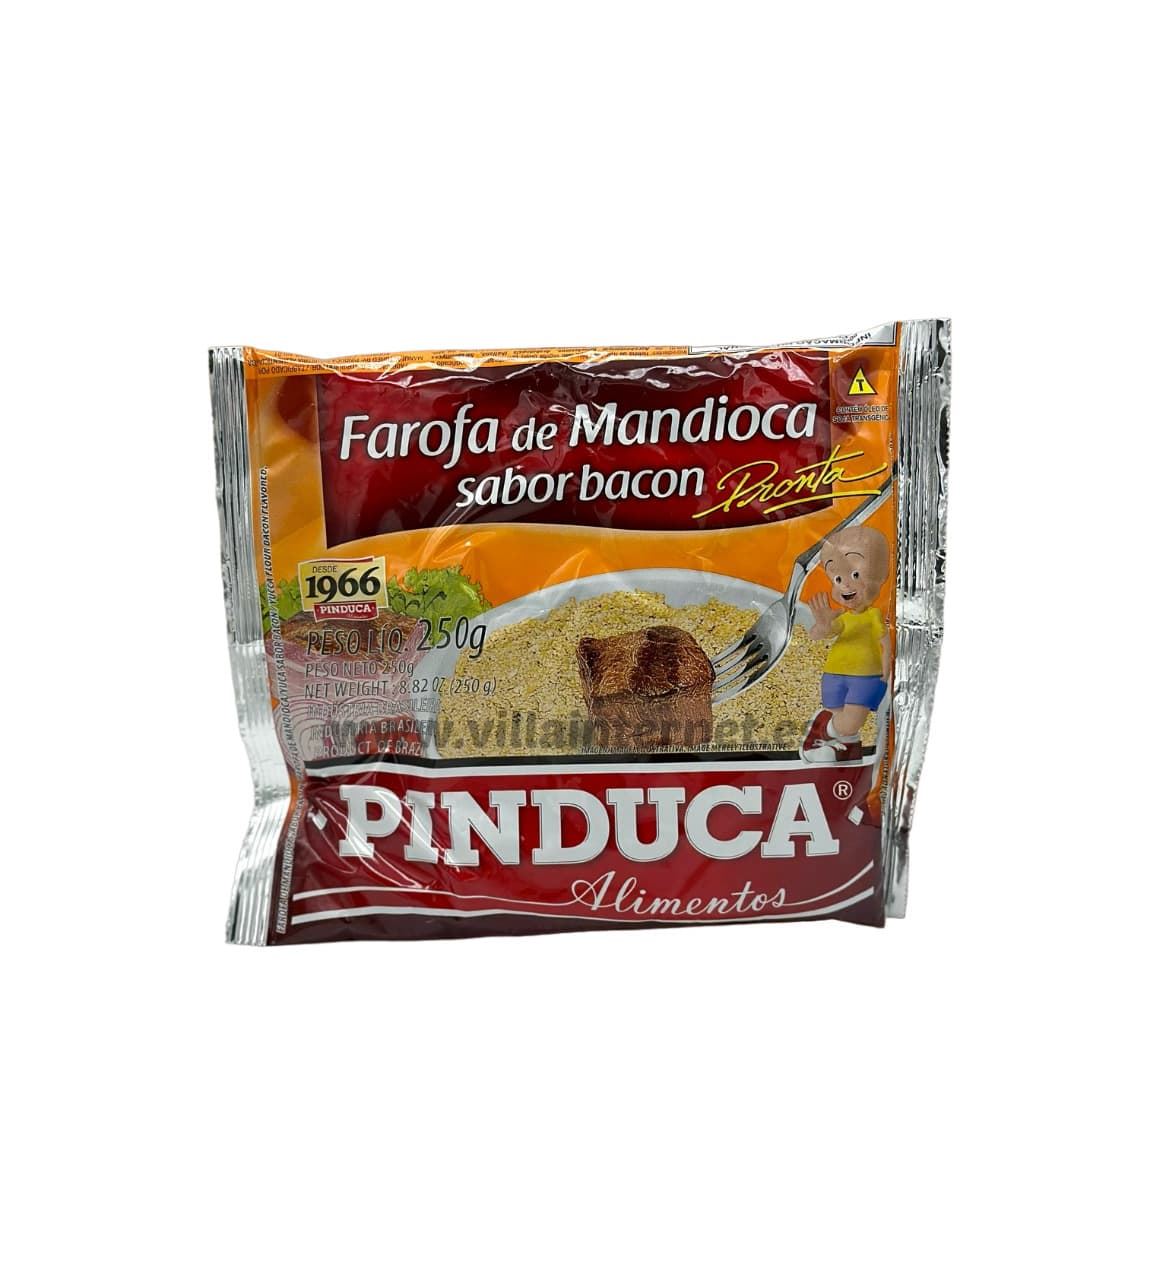 Farofa de mandioca sabor bacon 250g - Imagen 1